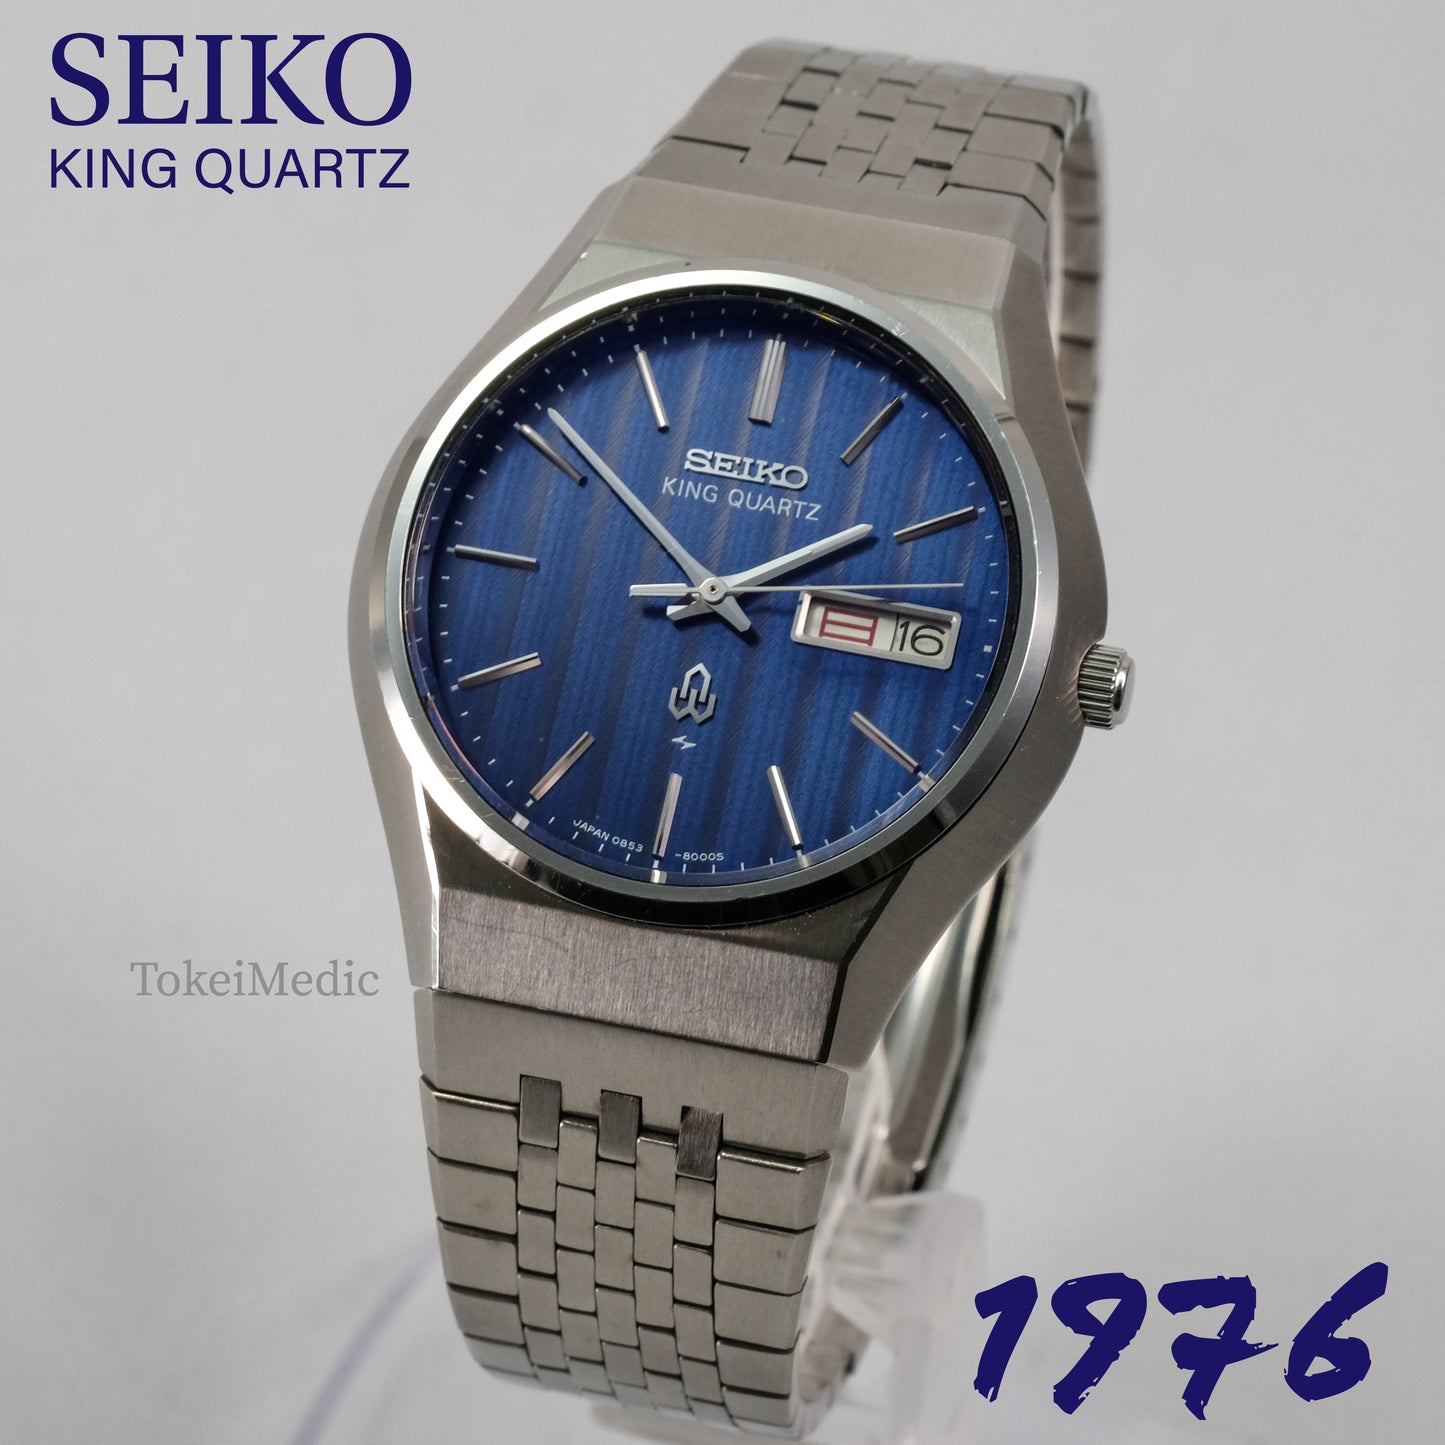 1976 Seiko King Quartz 0853-8001